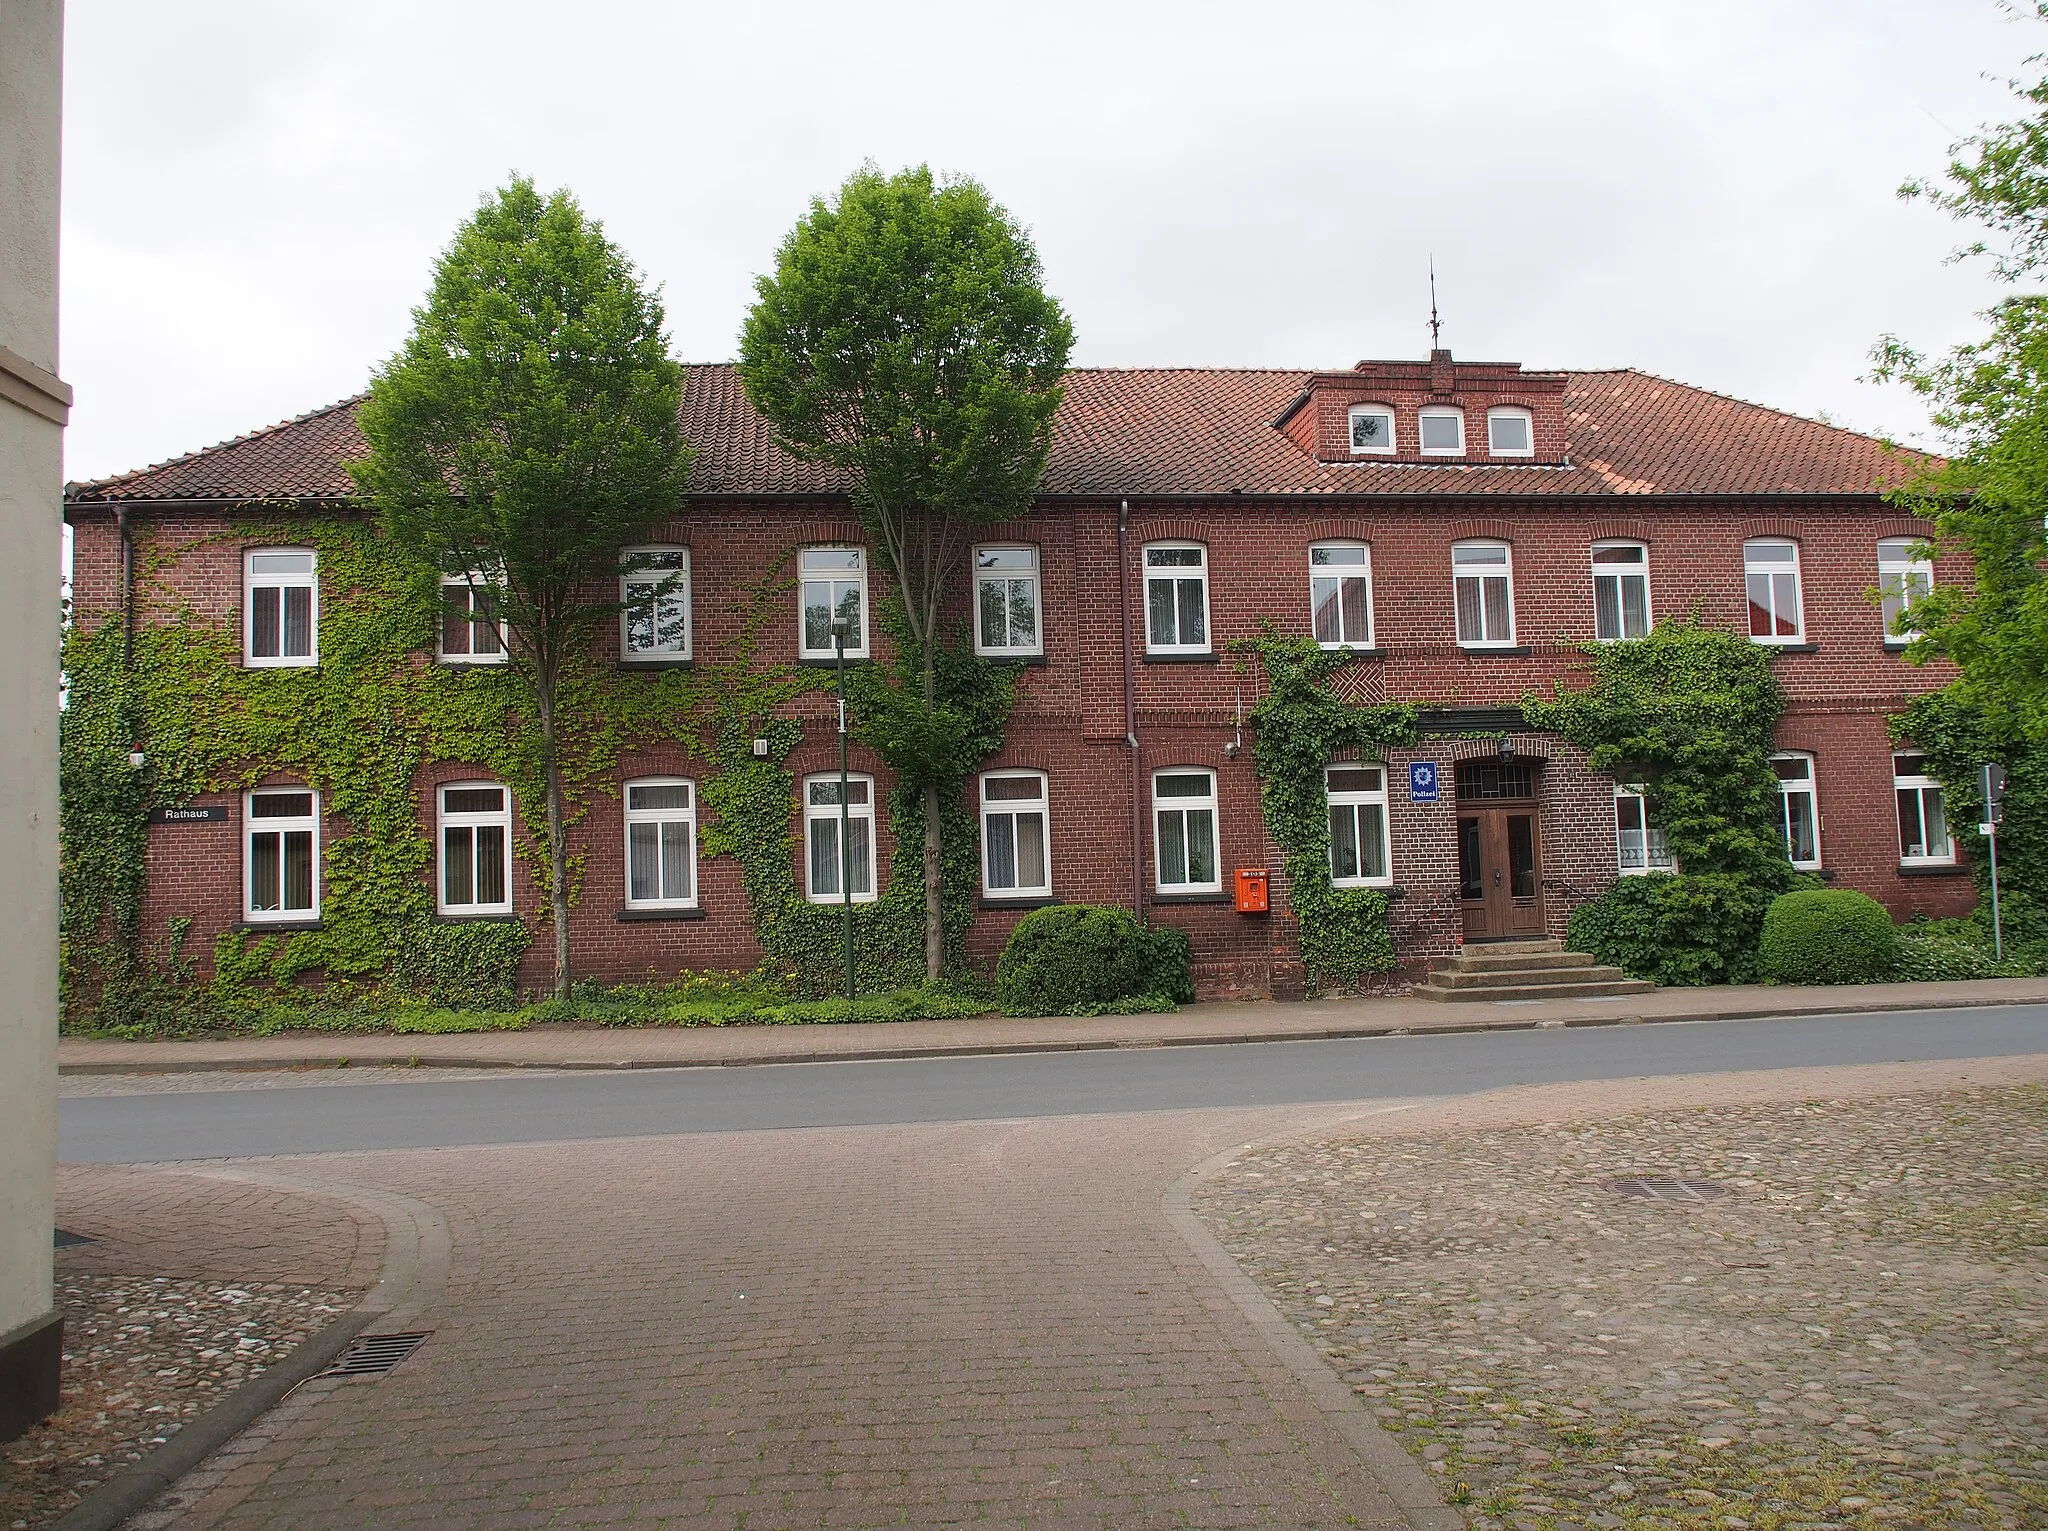 Photo showing: Rathaus von Wietzendorf, Landkreis Heidekreis, Lüneburger Heide